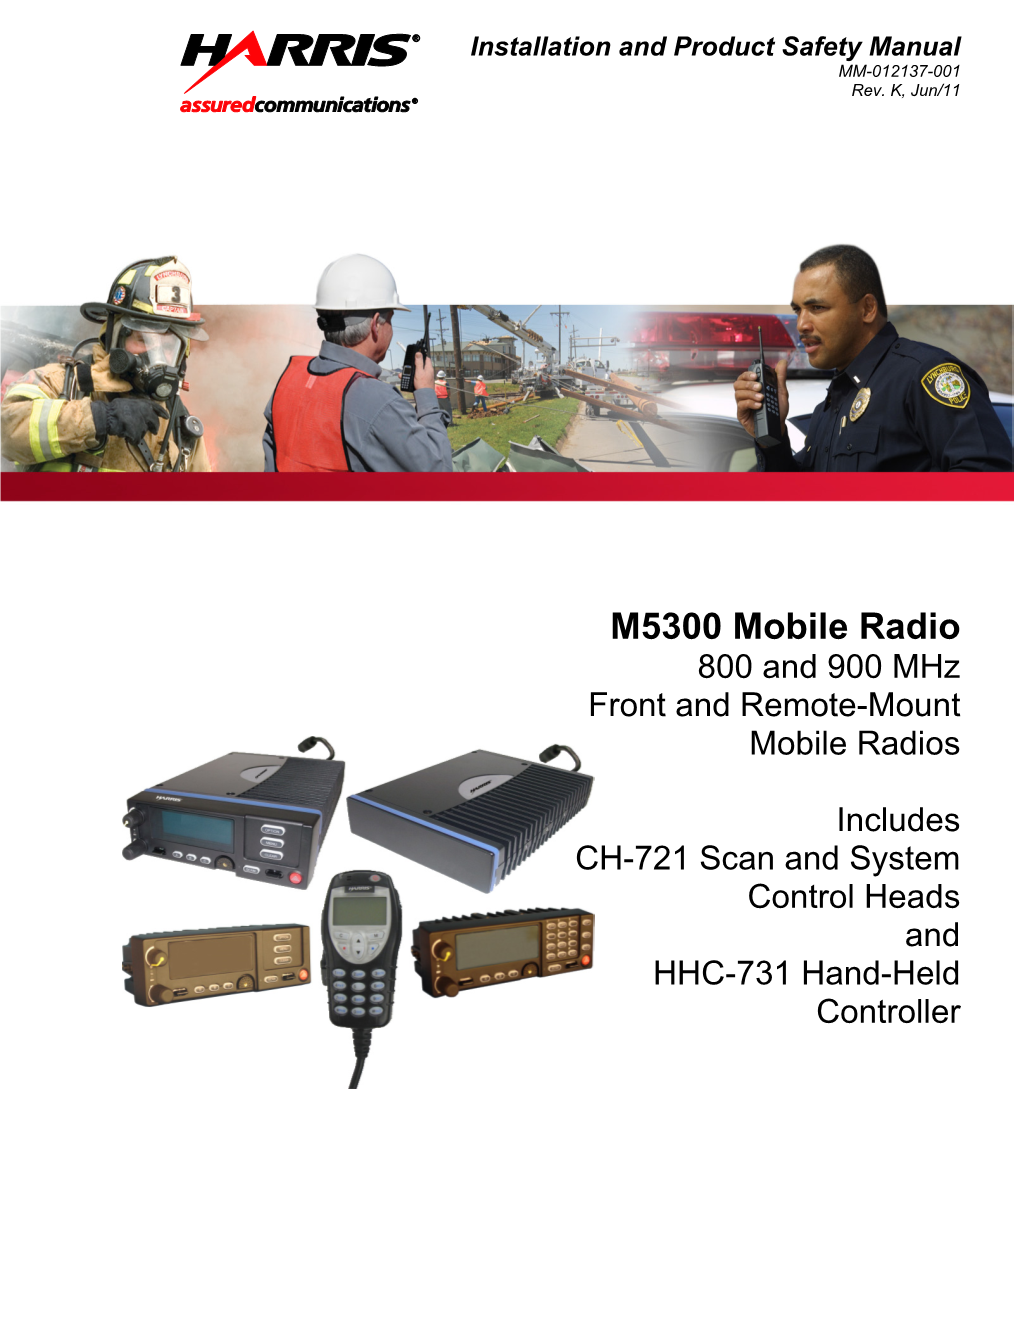 MM-012137-001, Rev. K, M5300 Mobile Radio, 800 & 900